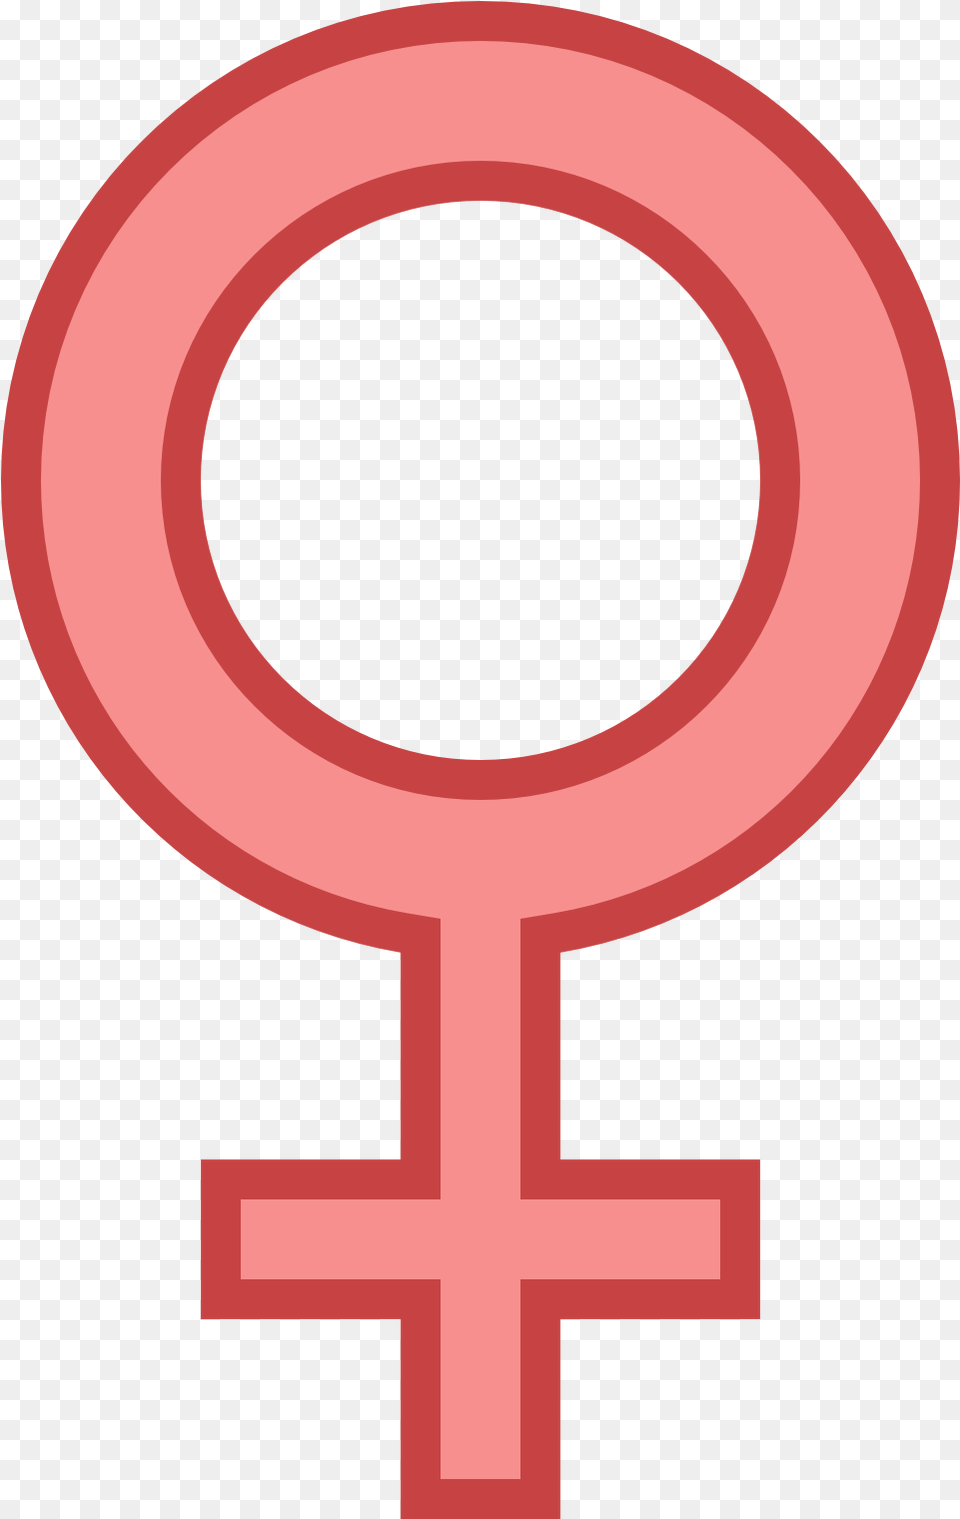 Female Gender Sign, Symbol Free Transparent Png